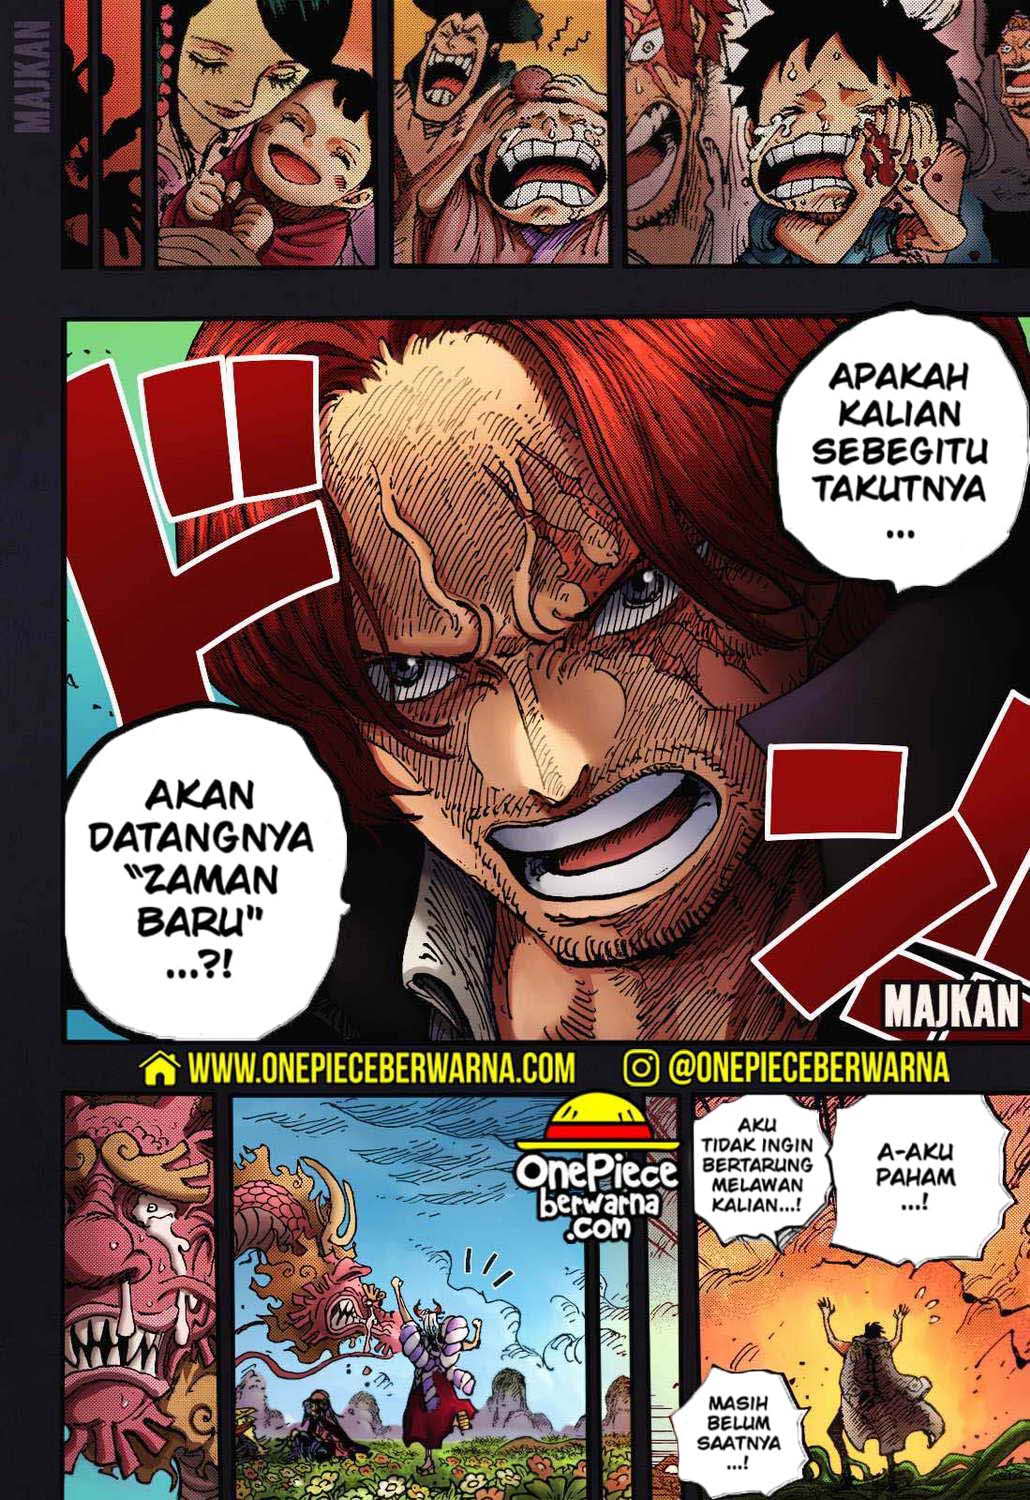 One Piece Berwarna Chapter 1055